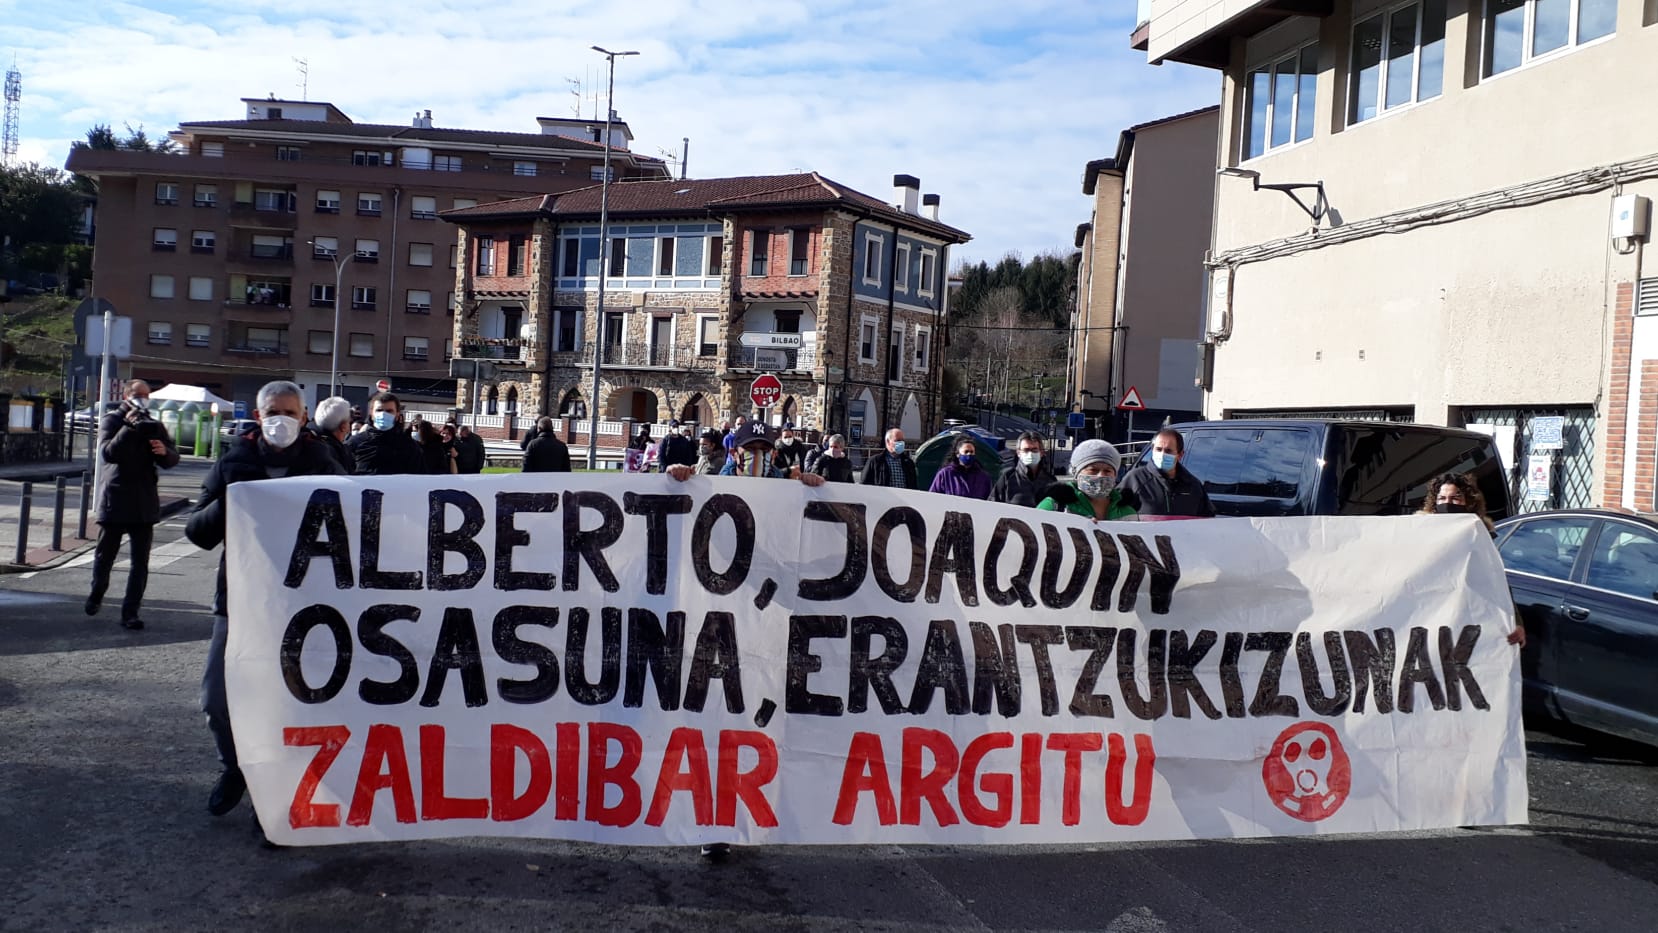 Manifestación en Zaldibar Argitu, 11 meses después de la muerte de los trabajadores Joaquín Beltrán y Alberto Sololuze /  Foto: @ZaldibarArgitu